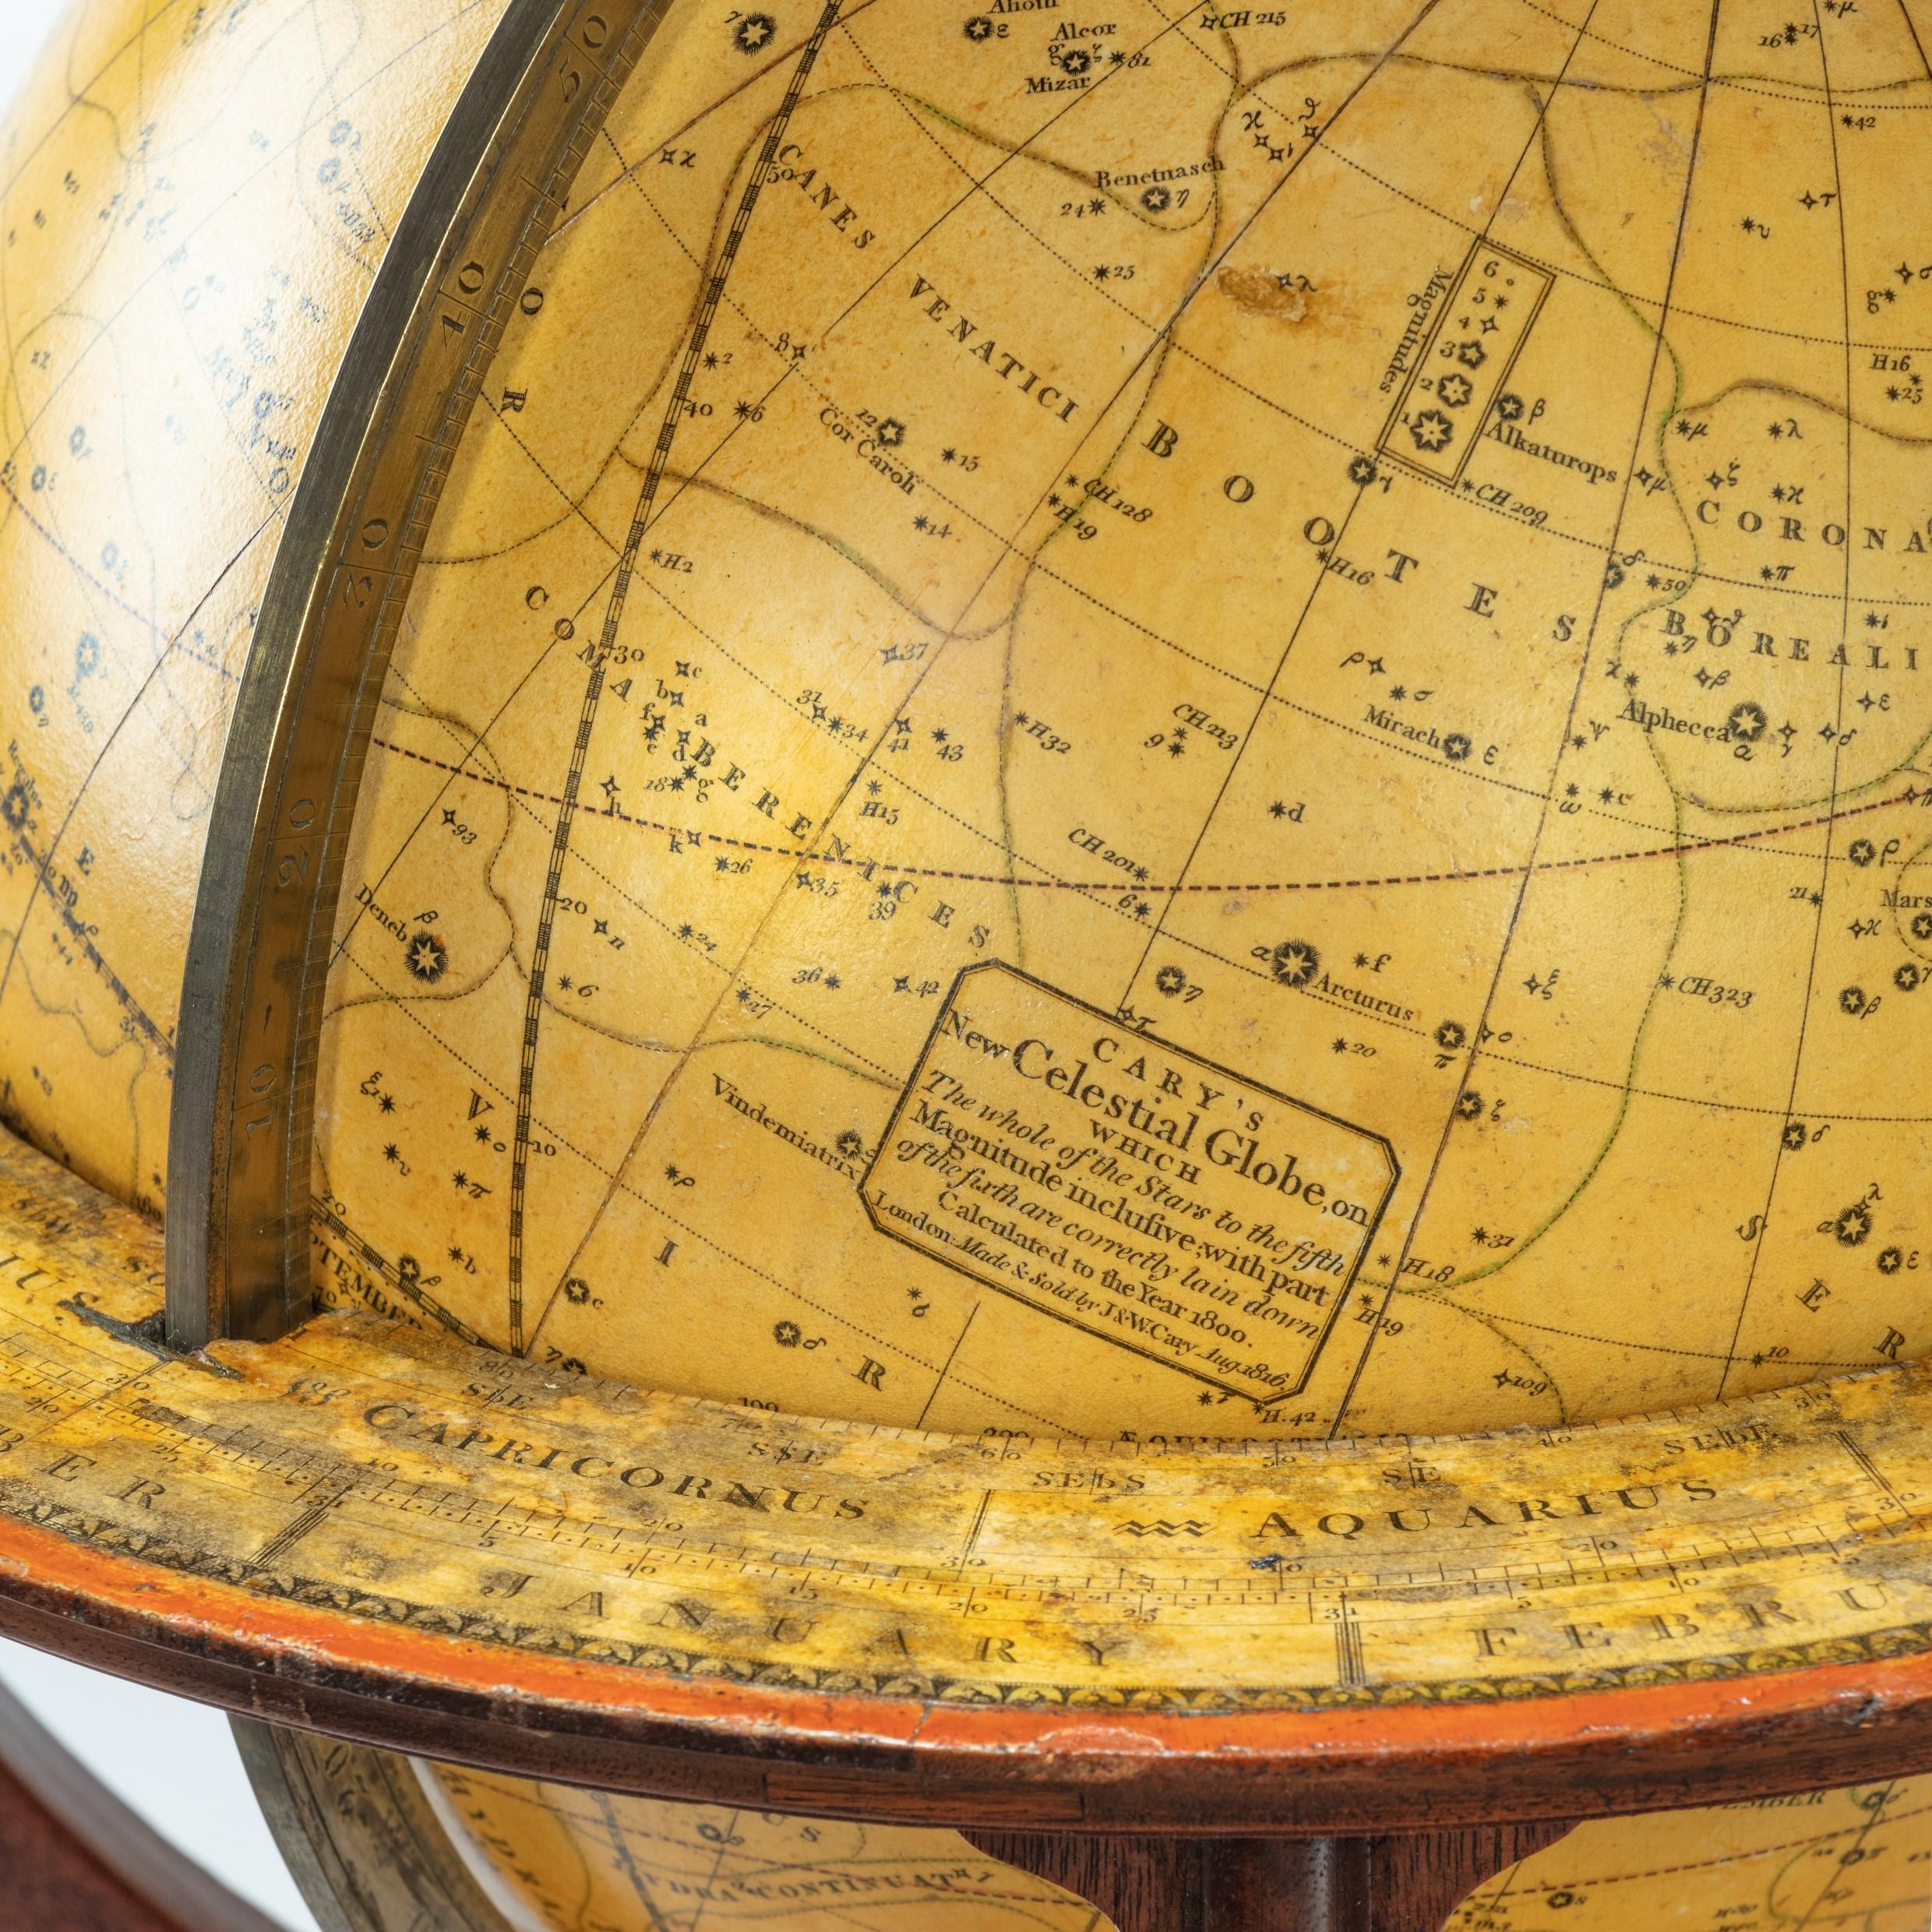 Ein seltenes Paar 9-Zoll-Tischgloben von Cary's, jeweils datiert 1816. Diese Globen stammen von John und William Cary's und zeigen die geografischen und politischen Grenzen, die nach dem Wiener Kongress festgelegt wurden. Auf jeder Uhr befindet sich